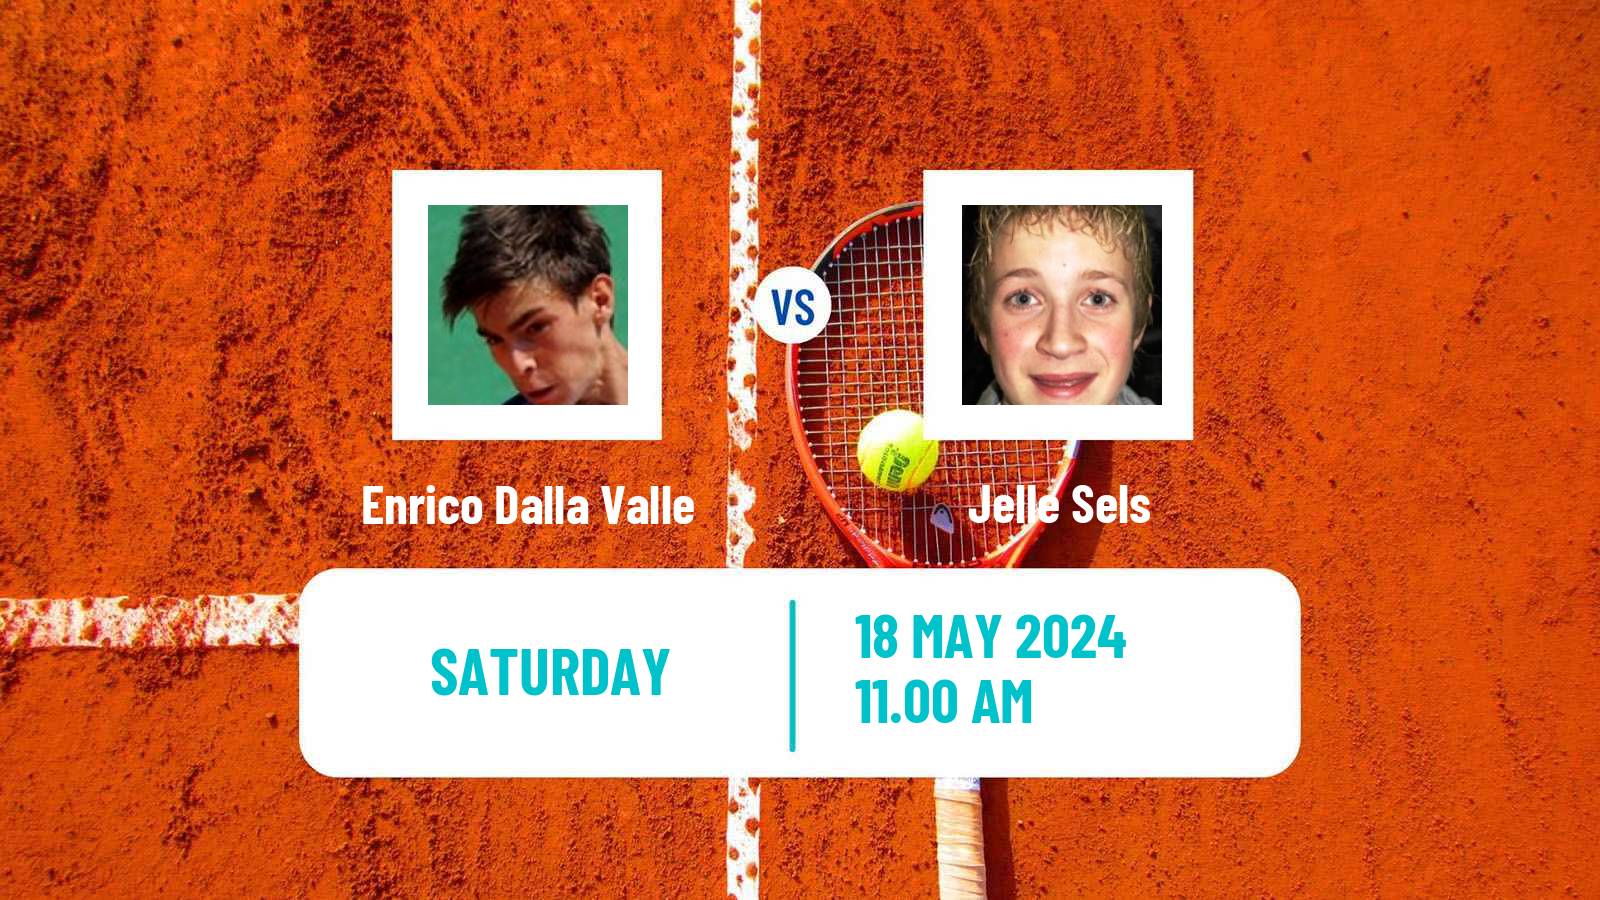 Tennis ITF M25 Reggio Emilia Men Enrico Dalla Valle - Jelle Sels